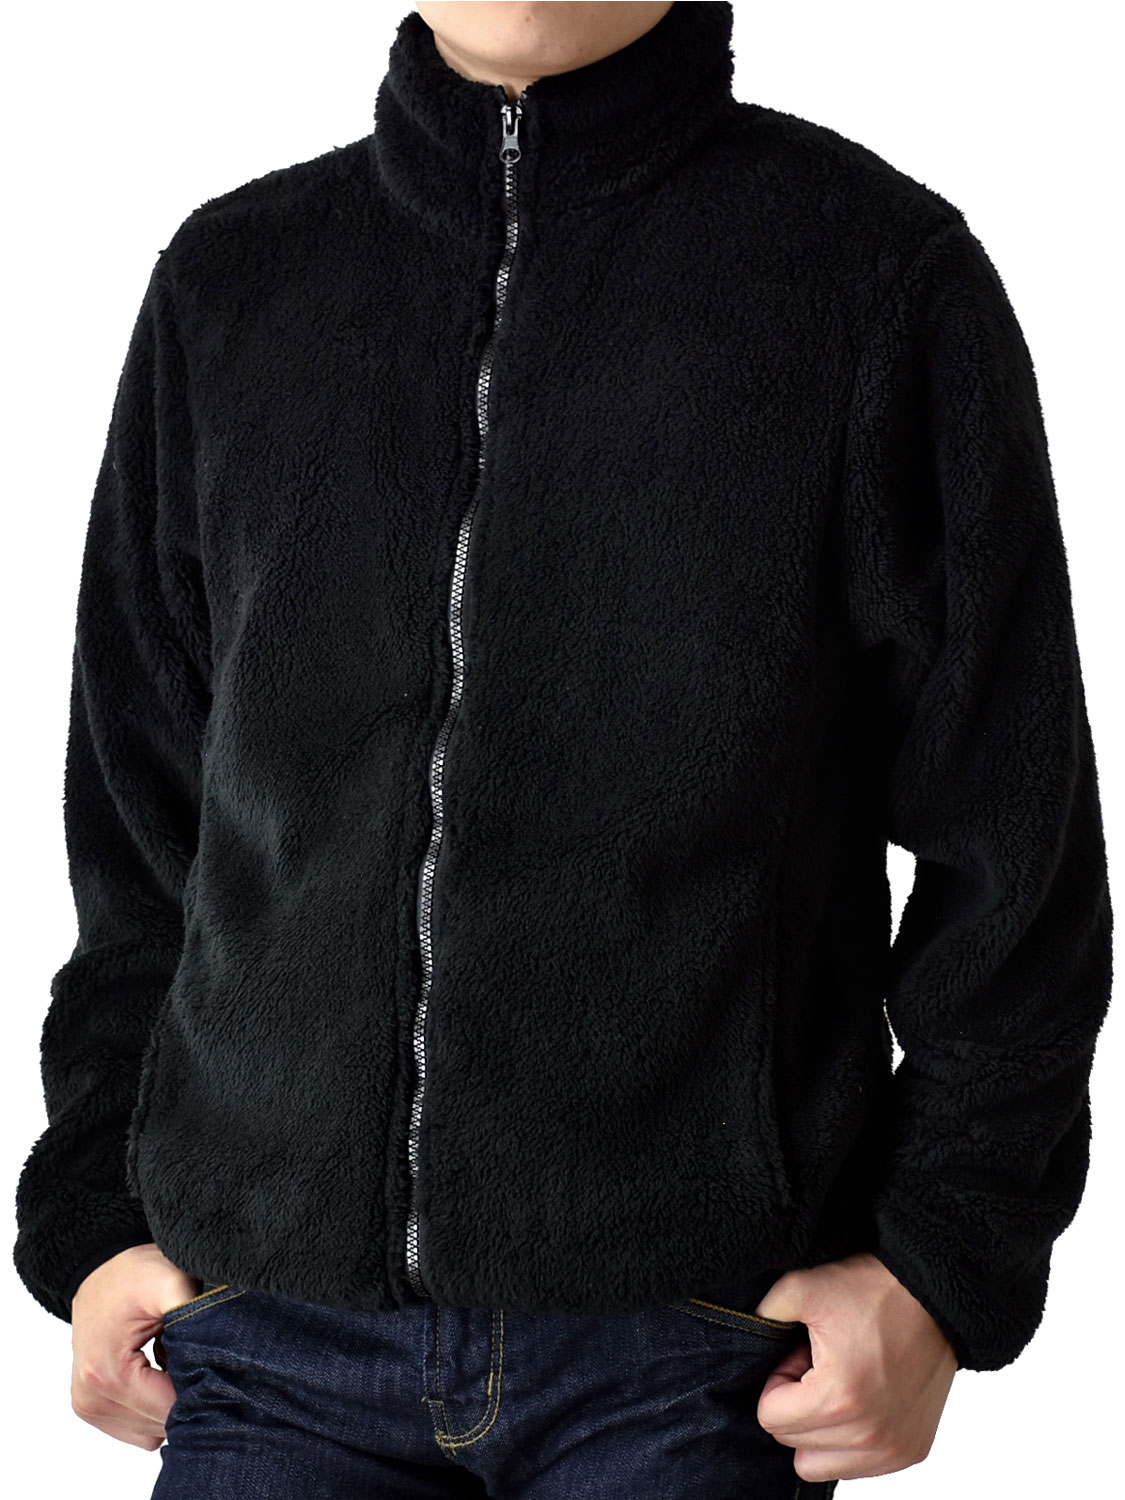 フリースジャケット メンズ ボアフリース 暖か スタンドカラー 防寒 起毛 裏起毛 送料無料 通販